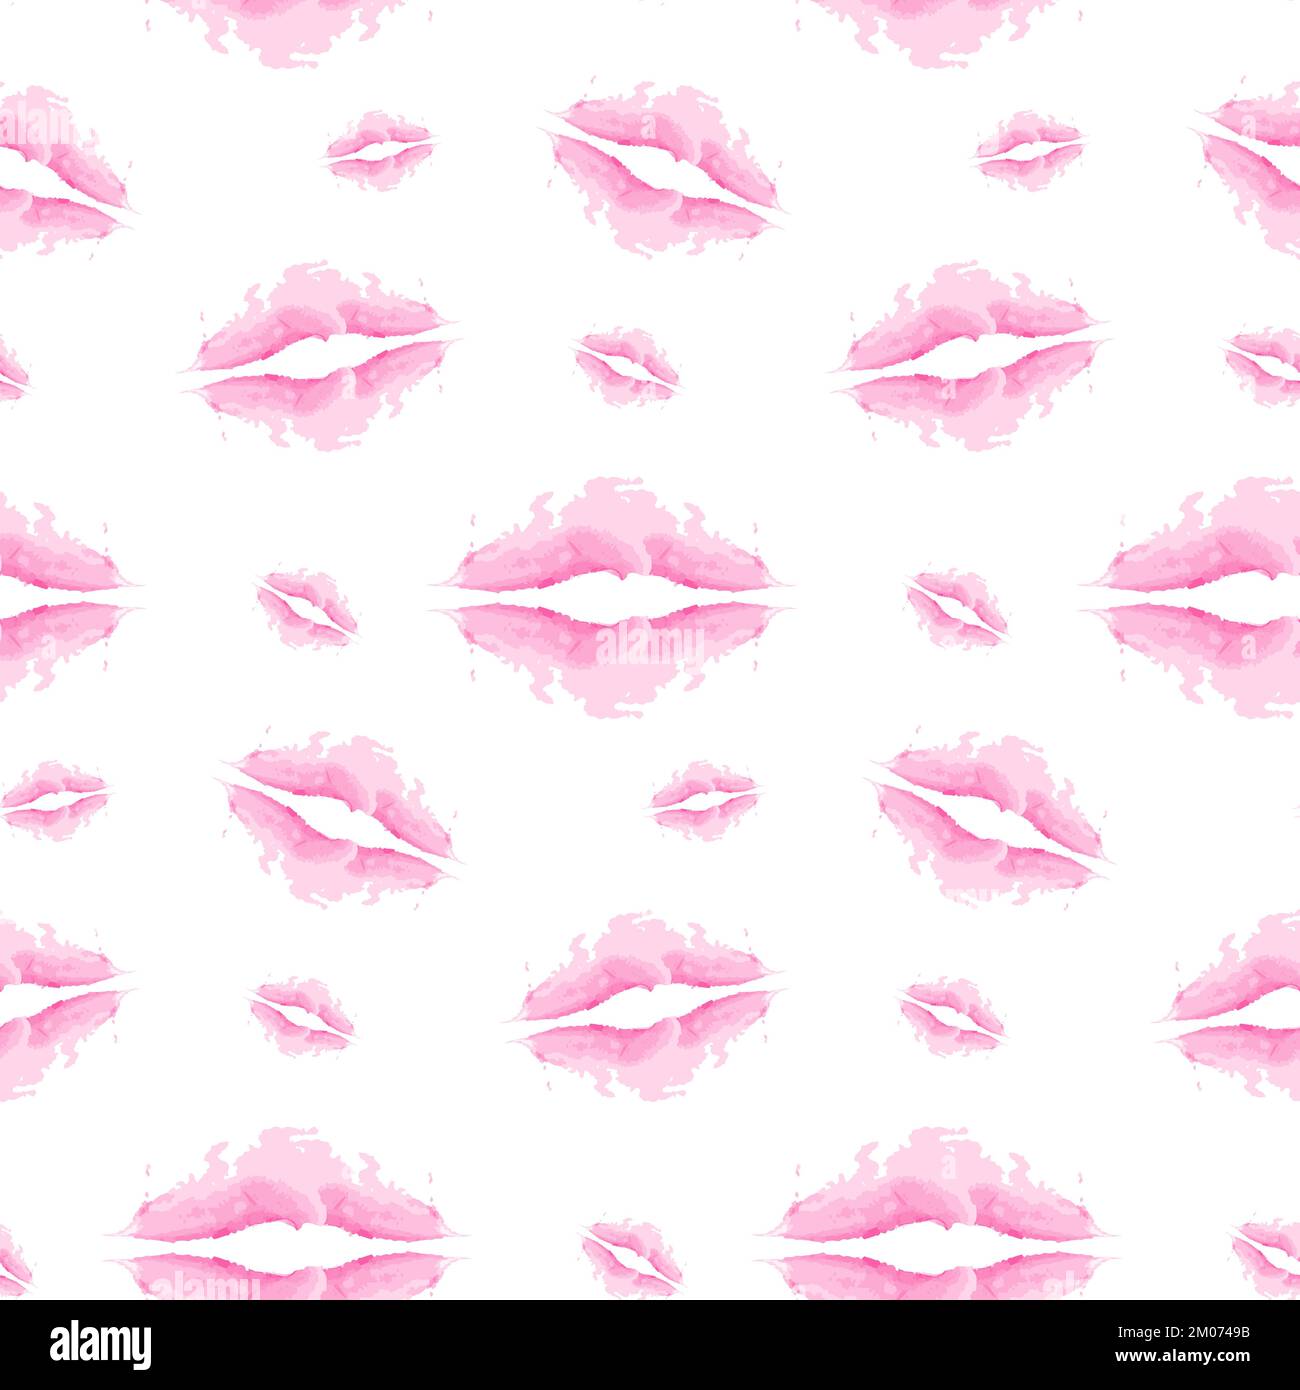 Motif infini formes abstraites en forme de lèvres dans des teintes tendance rose pâle à l'aquarelle. Bonne Saint Valentin. Isoler. Idéal pour le lettrage, l'arrière-plan ou les cartes, l'invitation, l'étiquette, l'étiquette. EPS Illustration de Vecteur